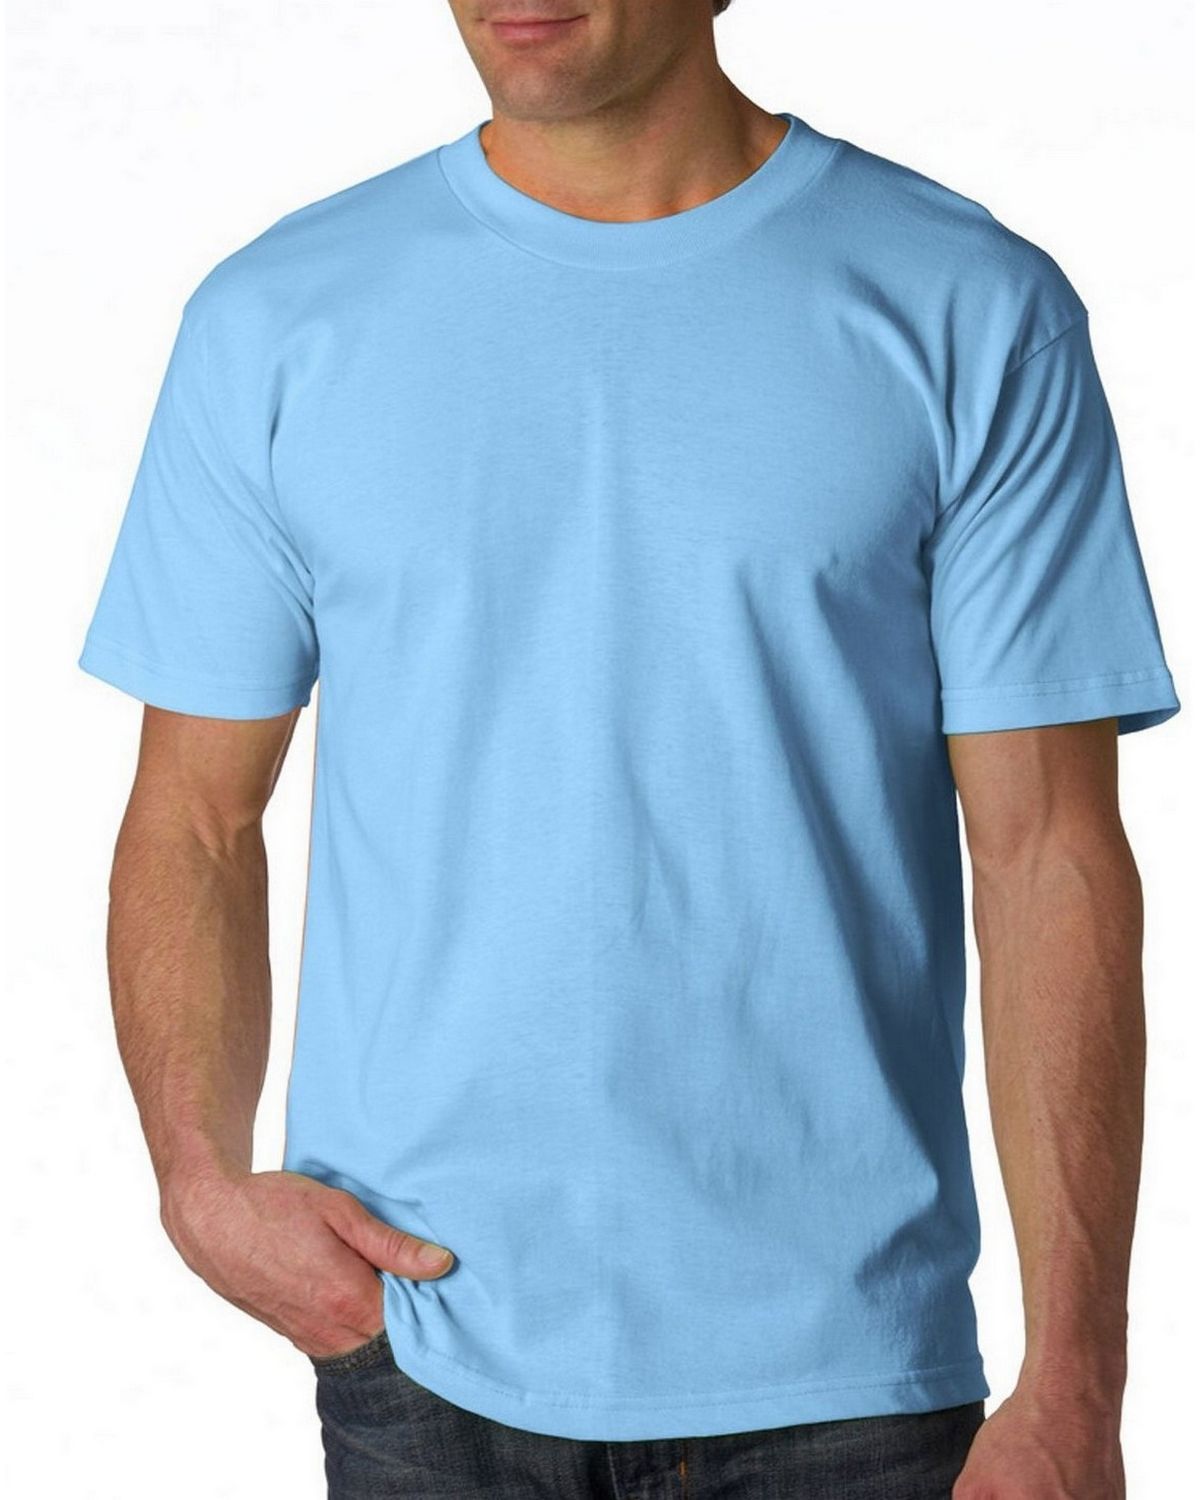 Buy light blue t shirt template - 53% OFF!